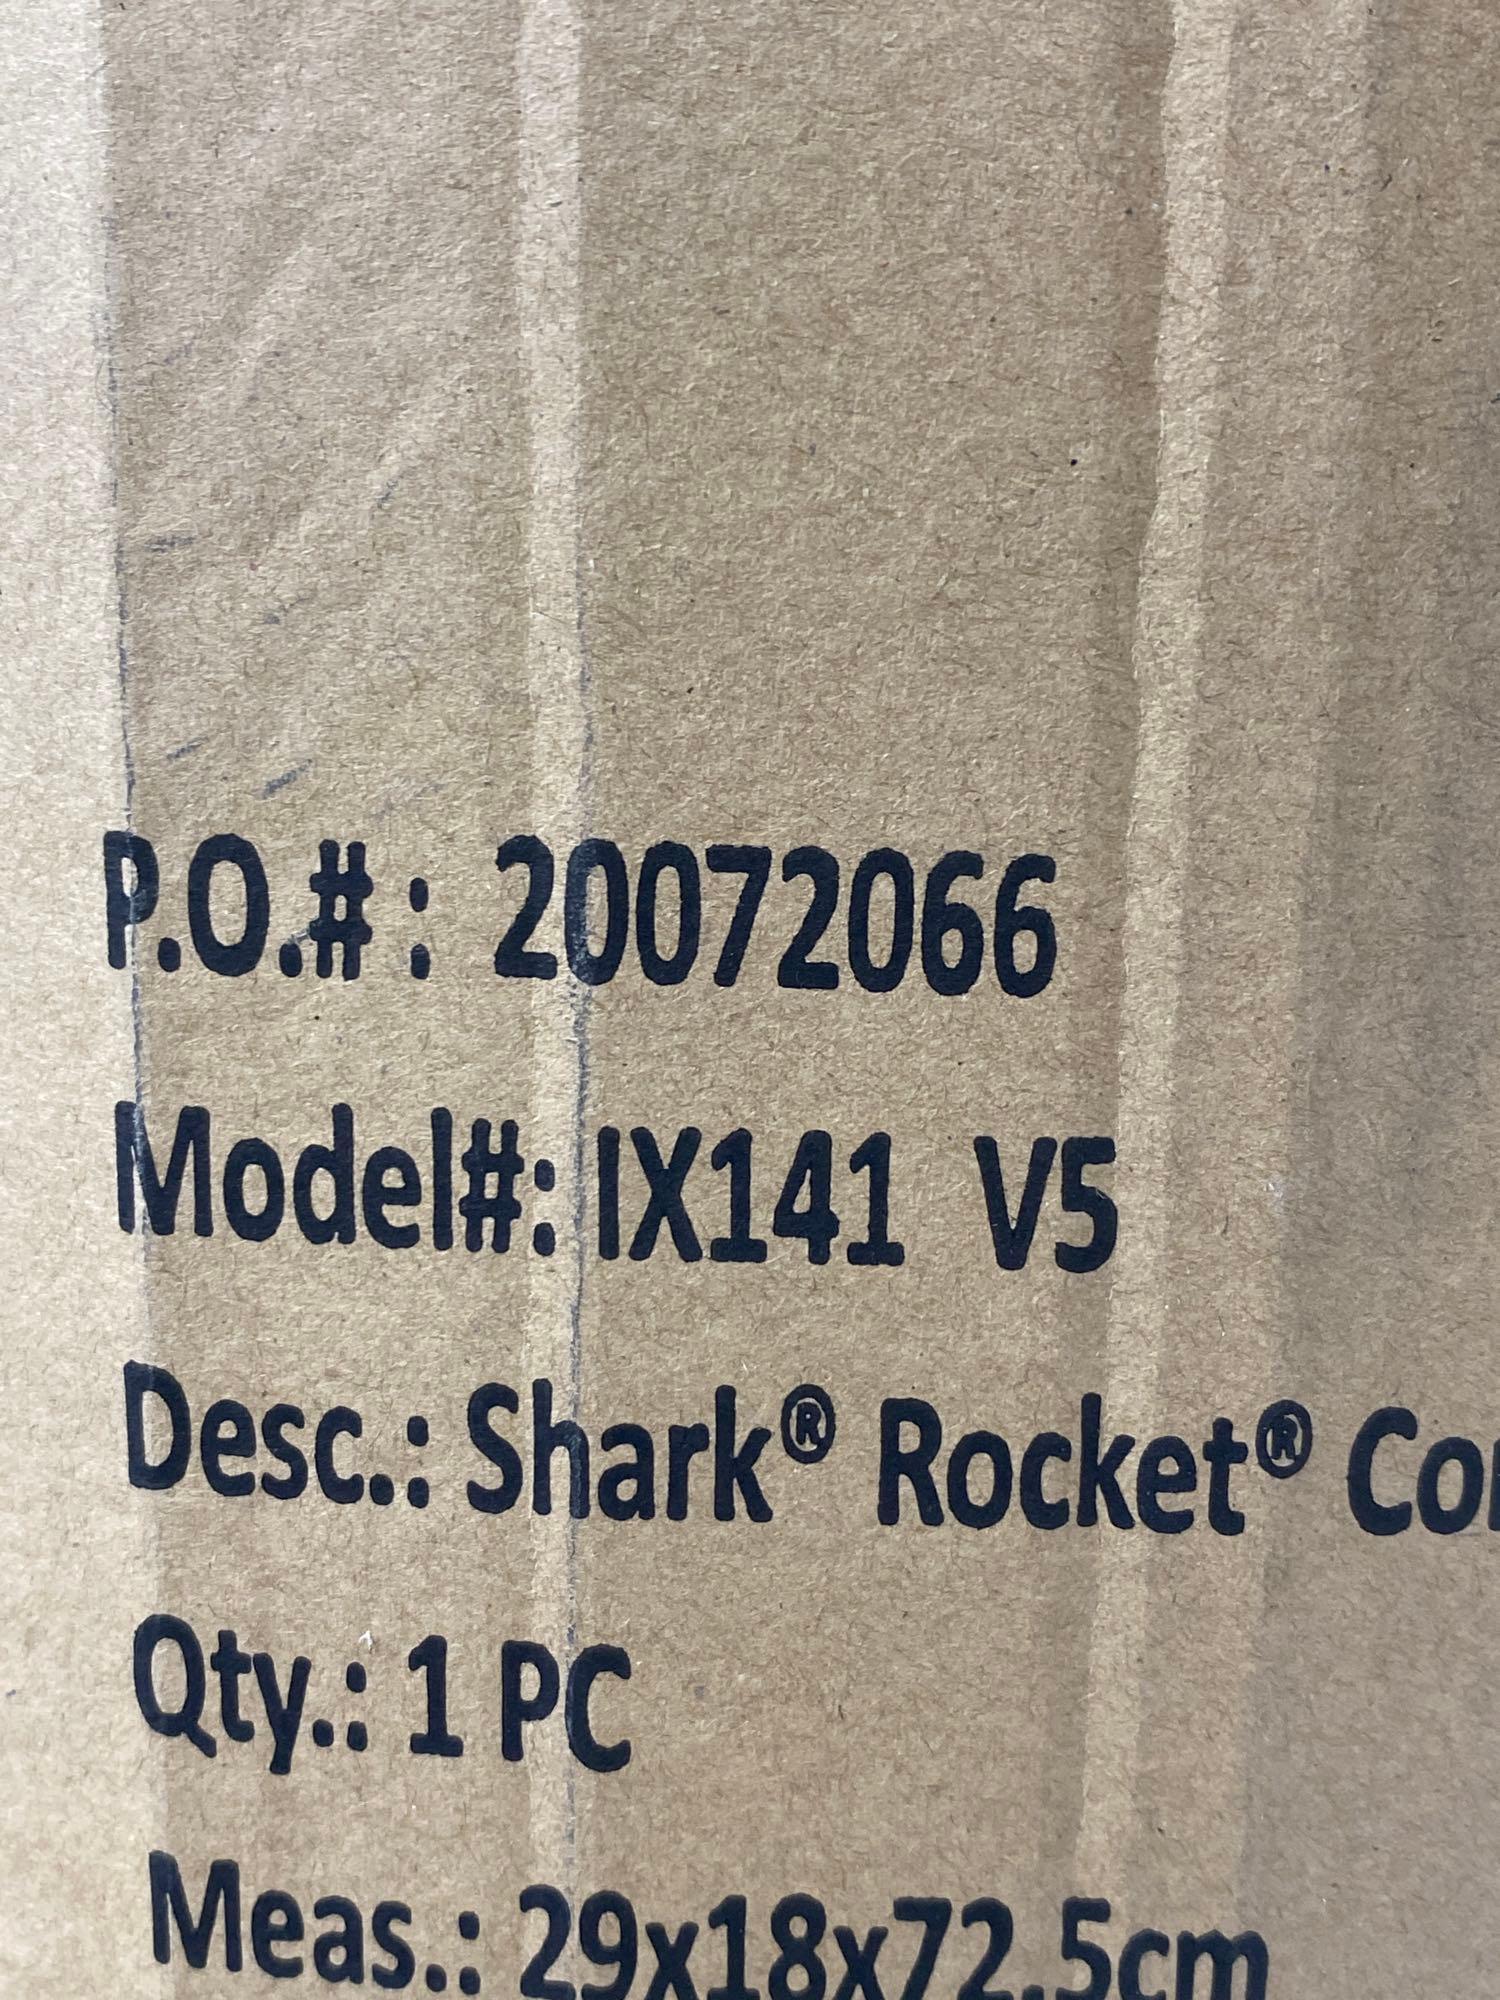 Shark IX141 Pet Cordless Stick Vacuum Rocket